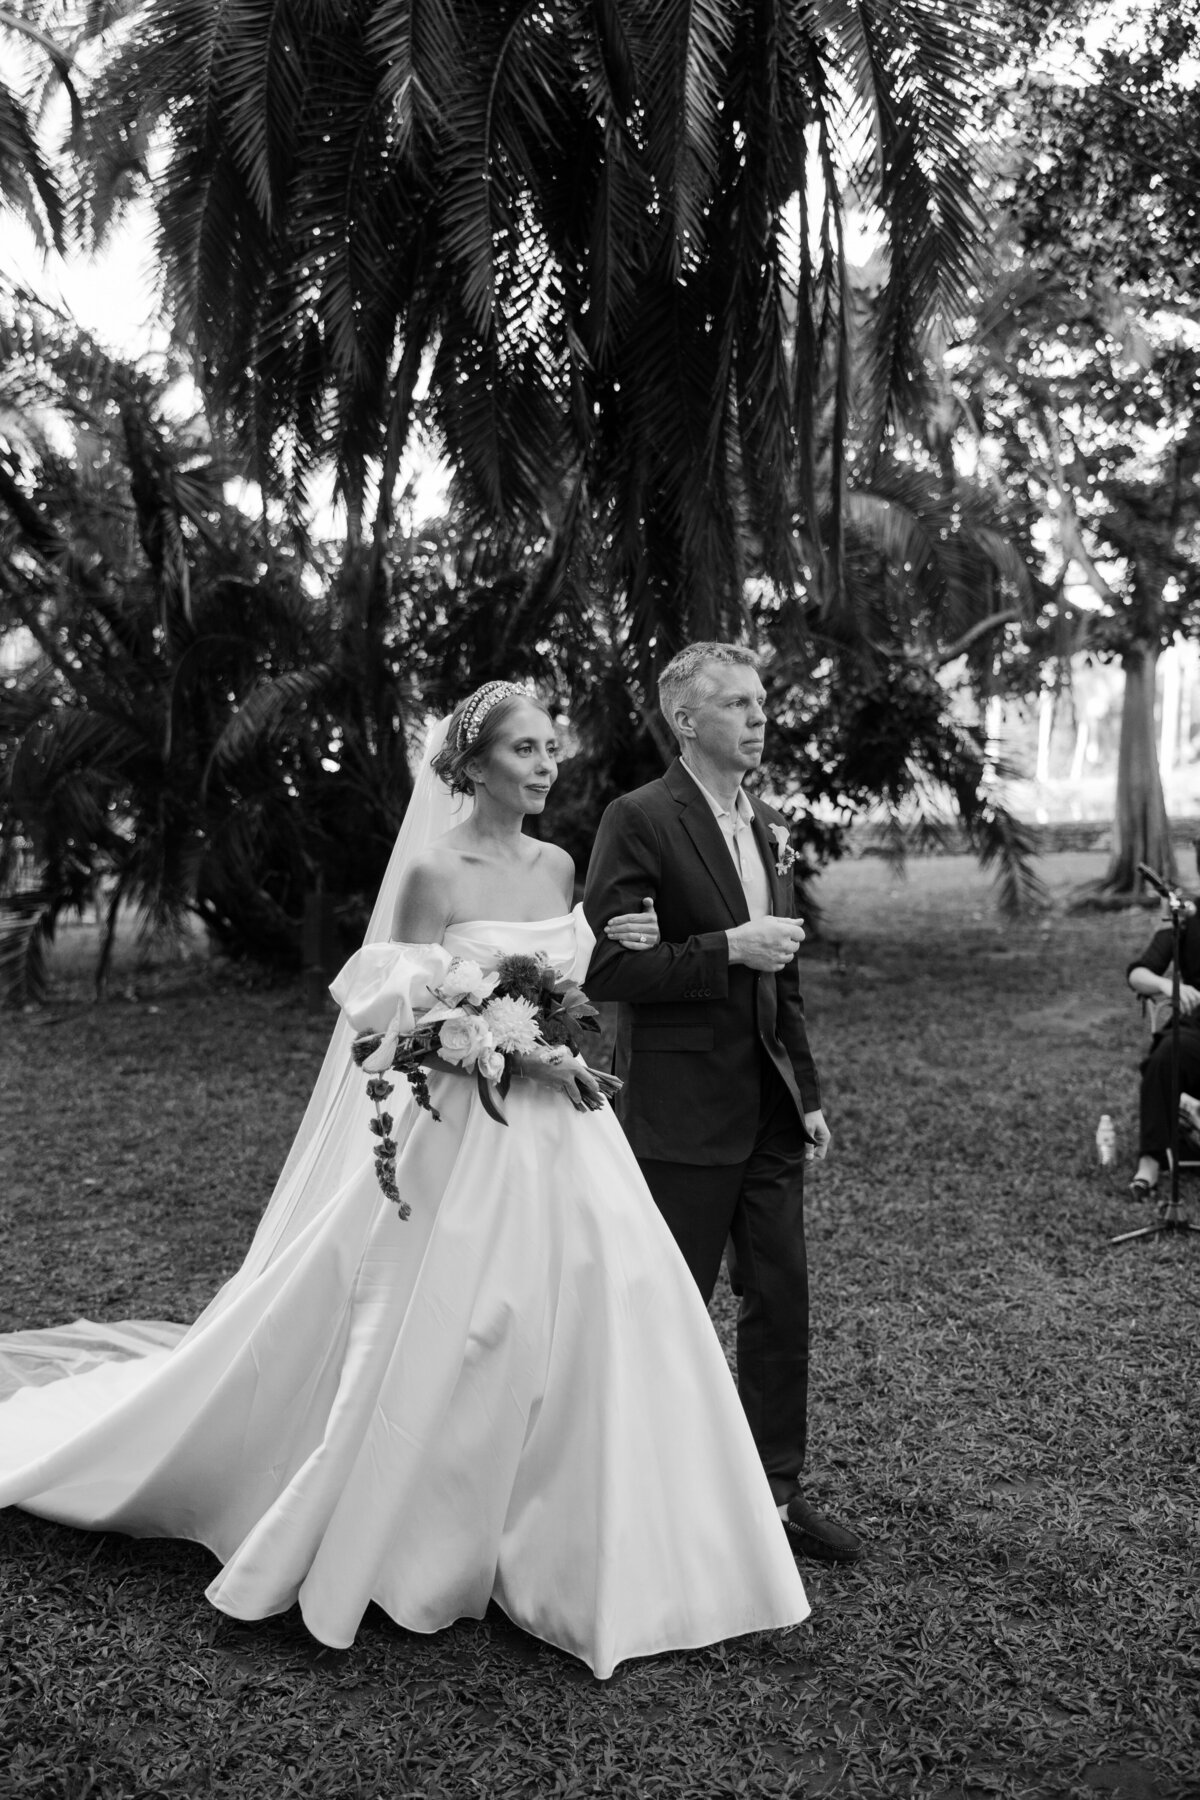 fairchild-botanical-garden-anti-bride-wedding-miami-florida-204